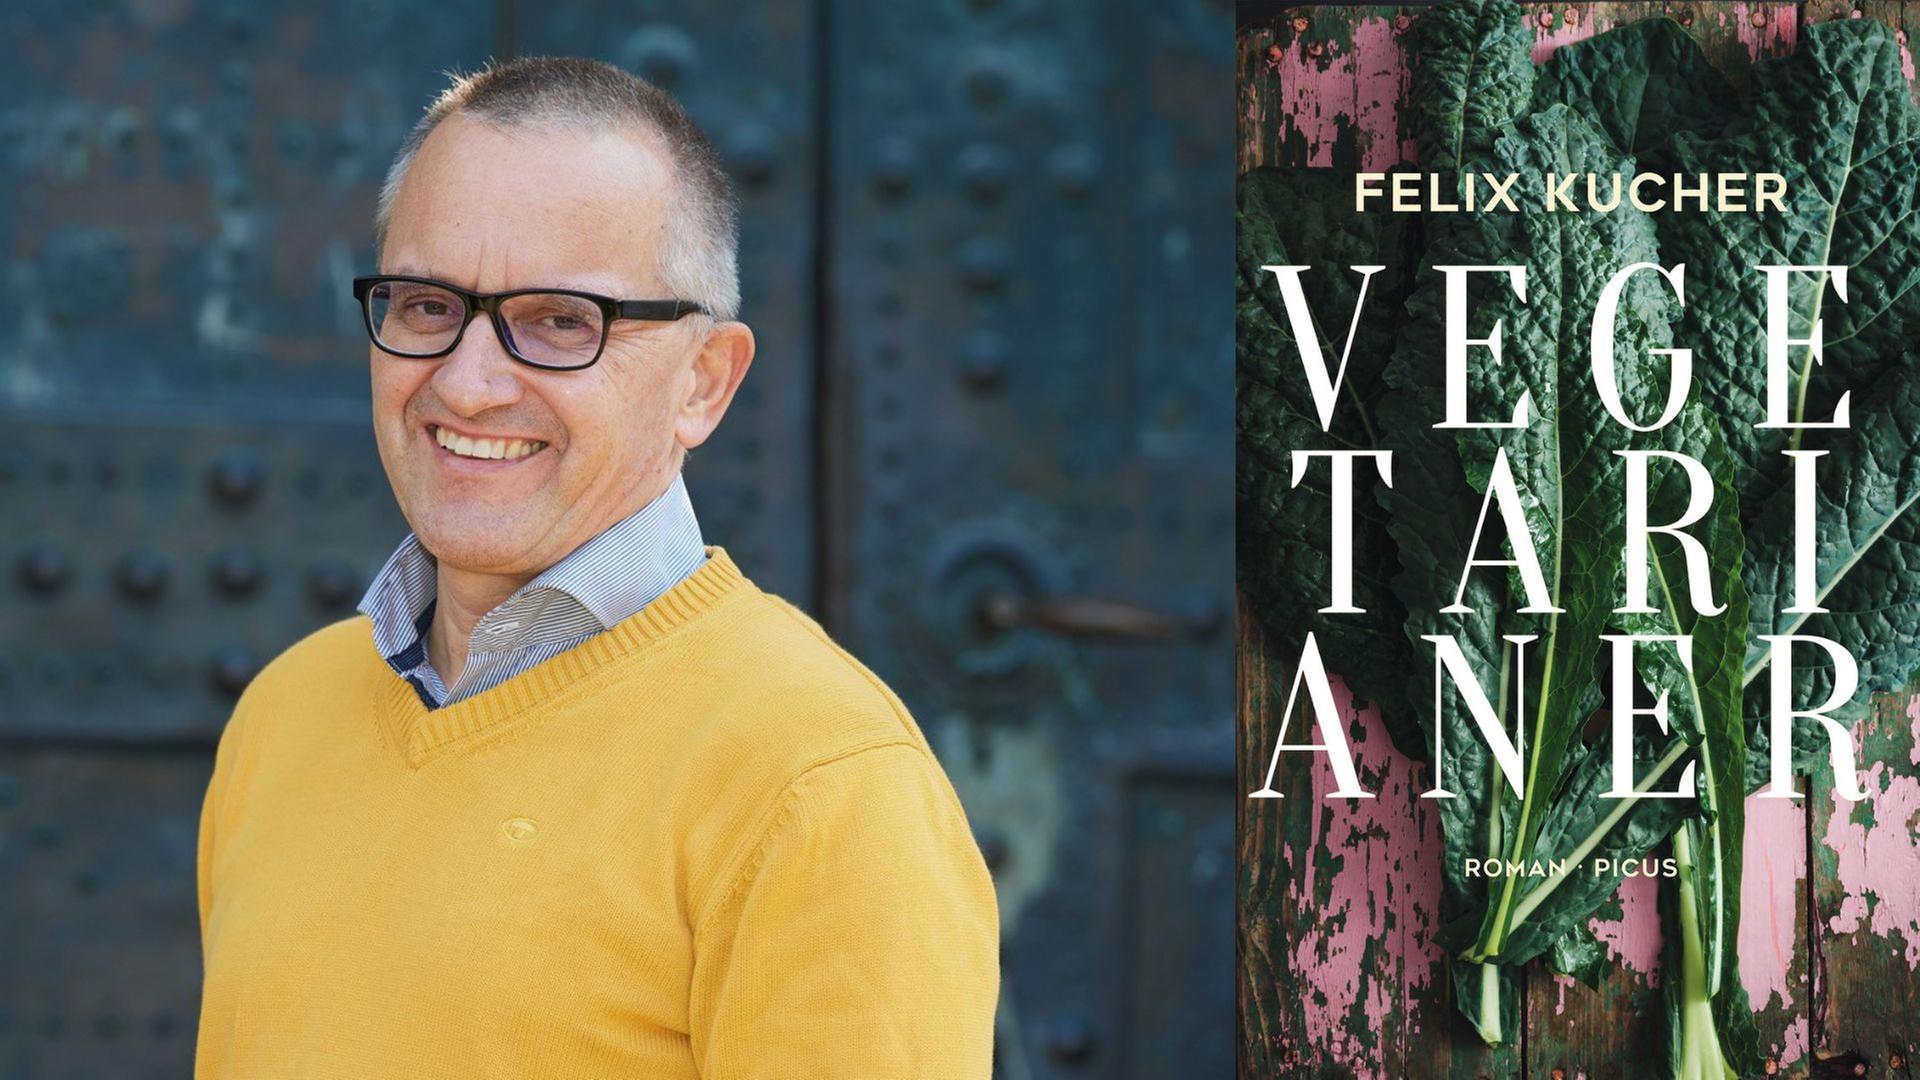 Felix Kucher: "Vegetarianer"
Zu sehen sind der Autor und das Buchcover